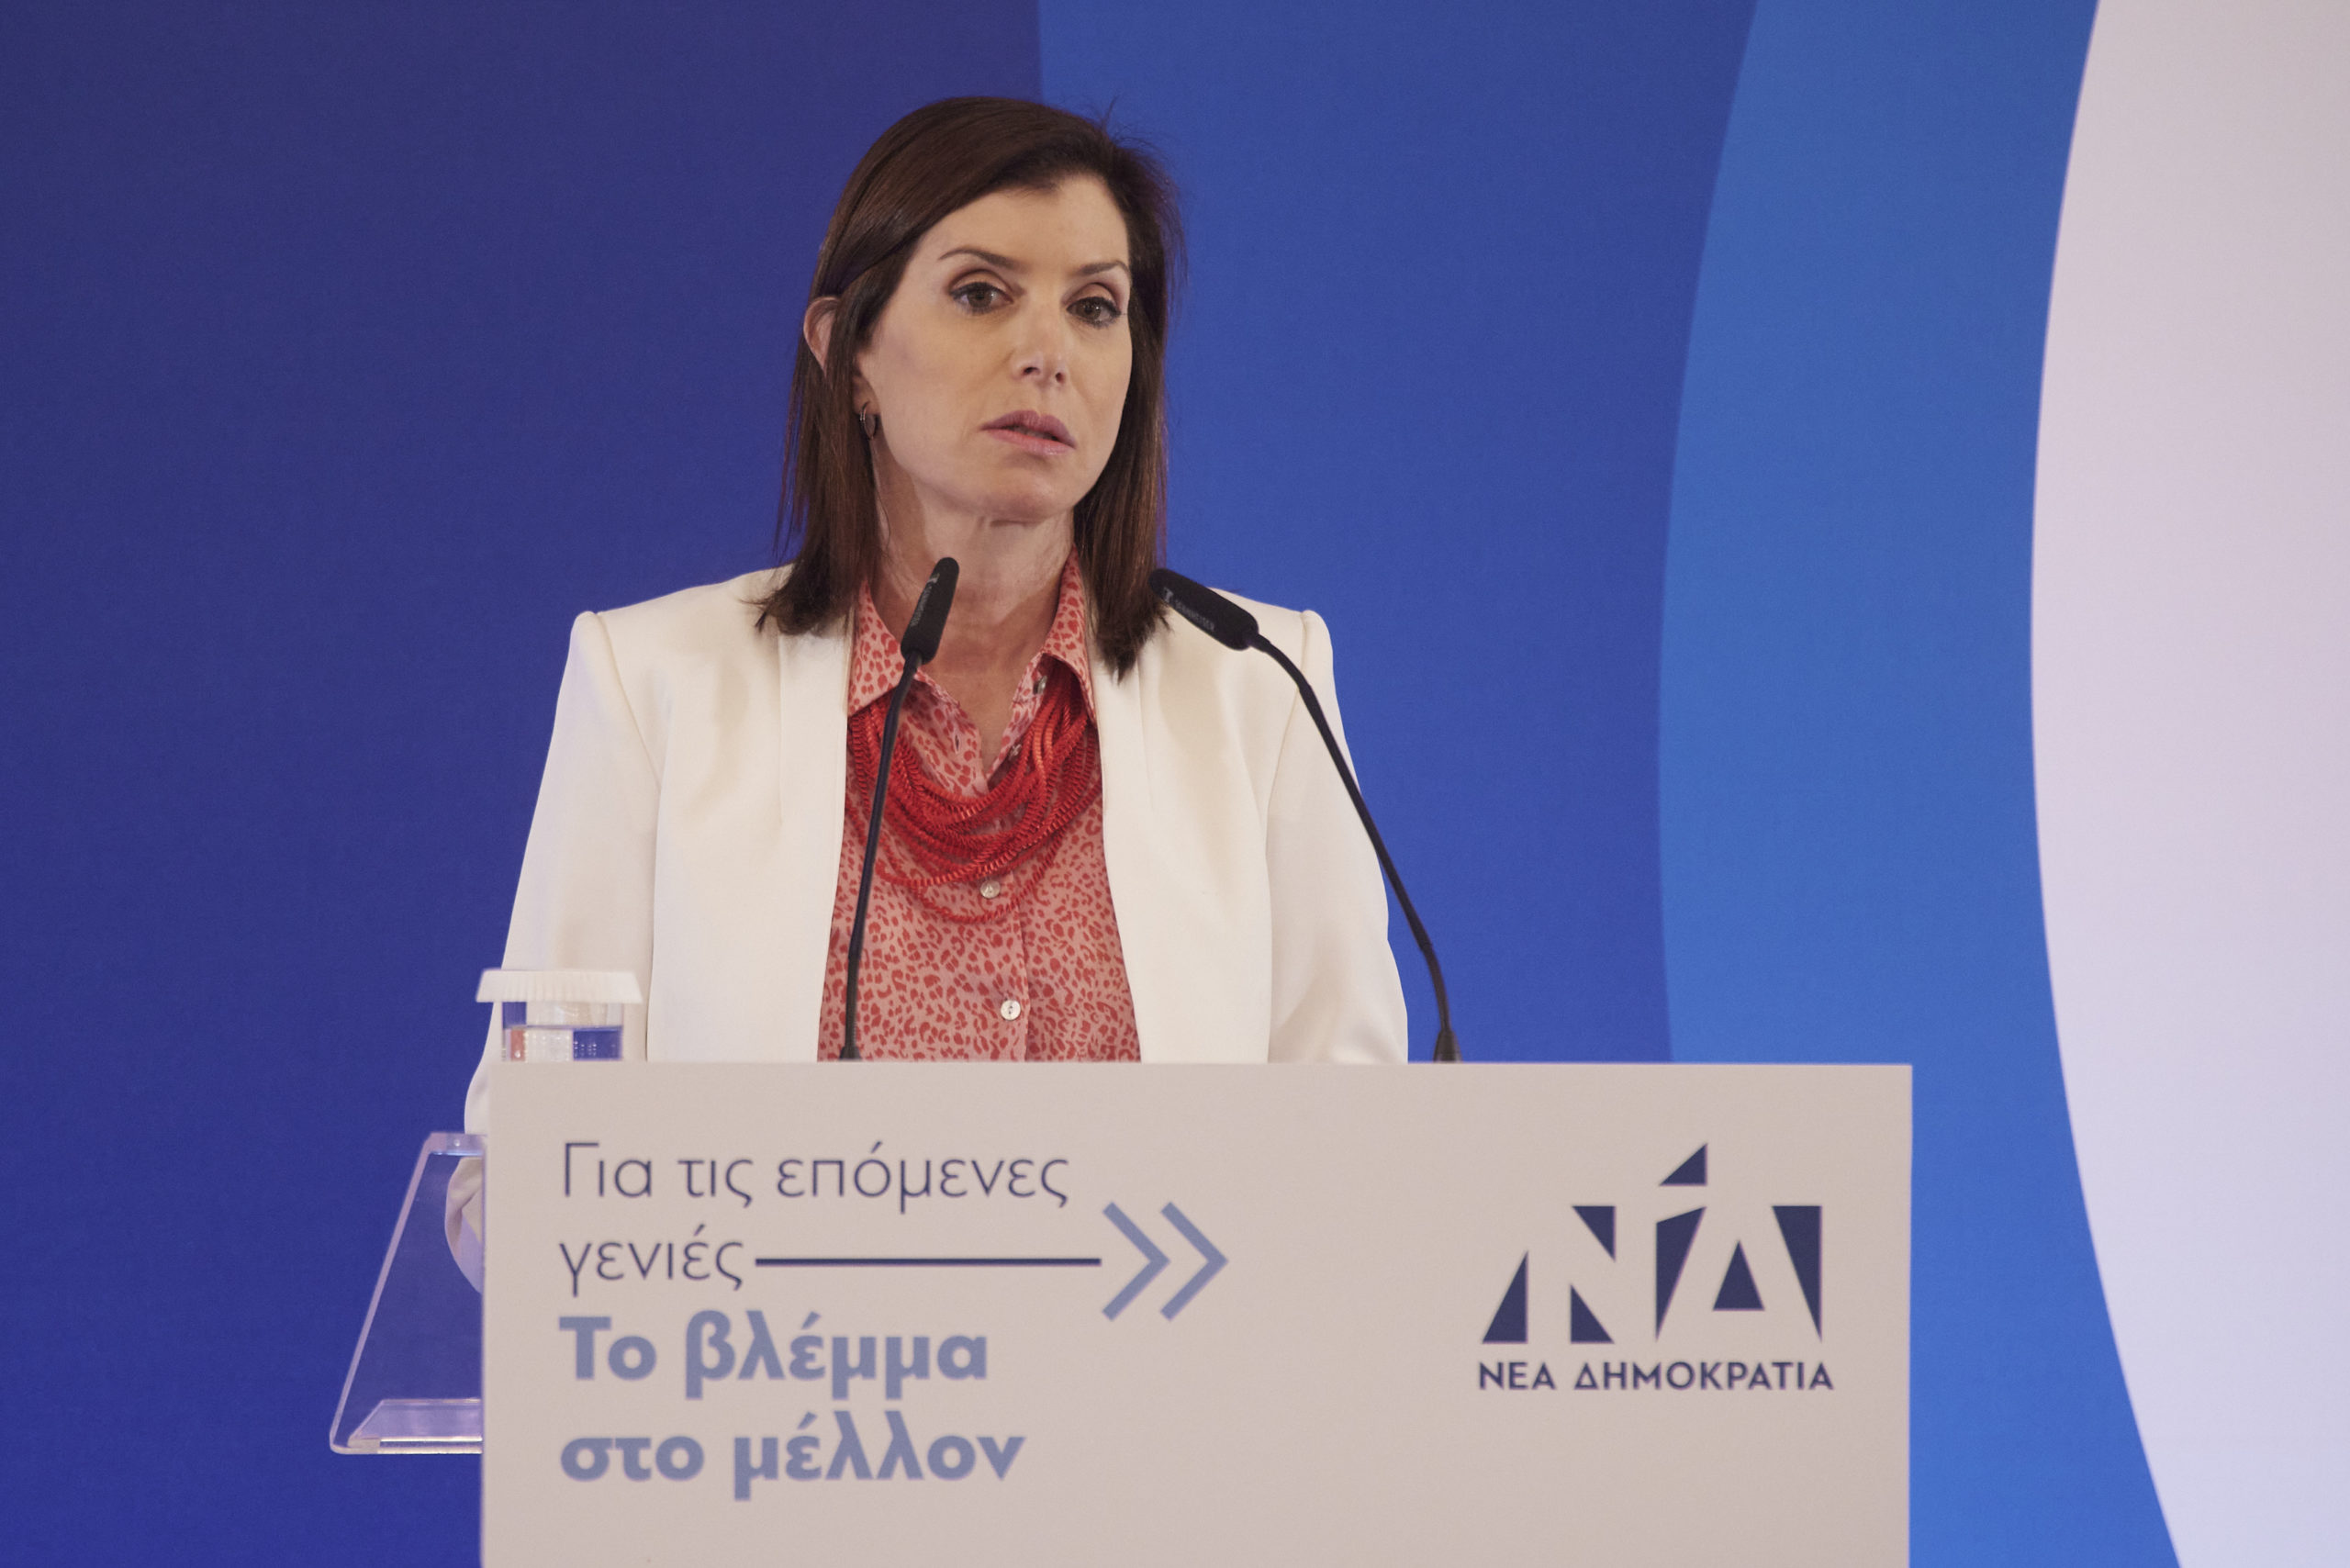 Άννα Μισέλ Ασημακοπούλου: Ορίστηκε εκπρόσωπος Τύπου της Ευρωομάδας της Νέας Δημοκρατίας